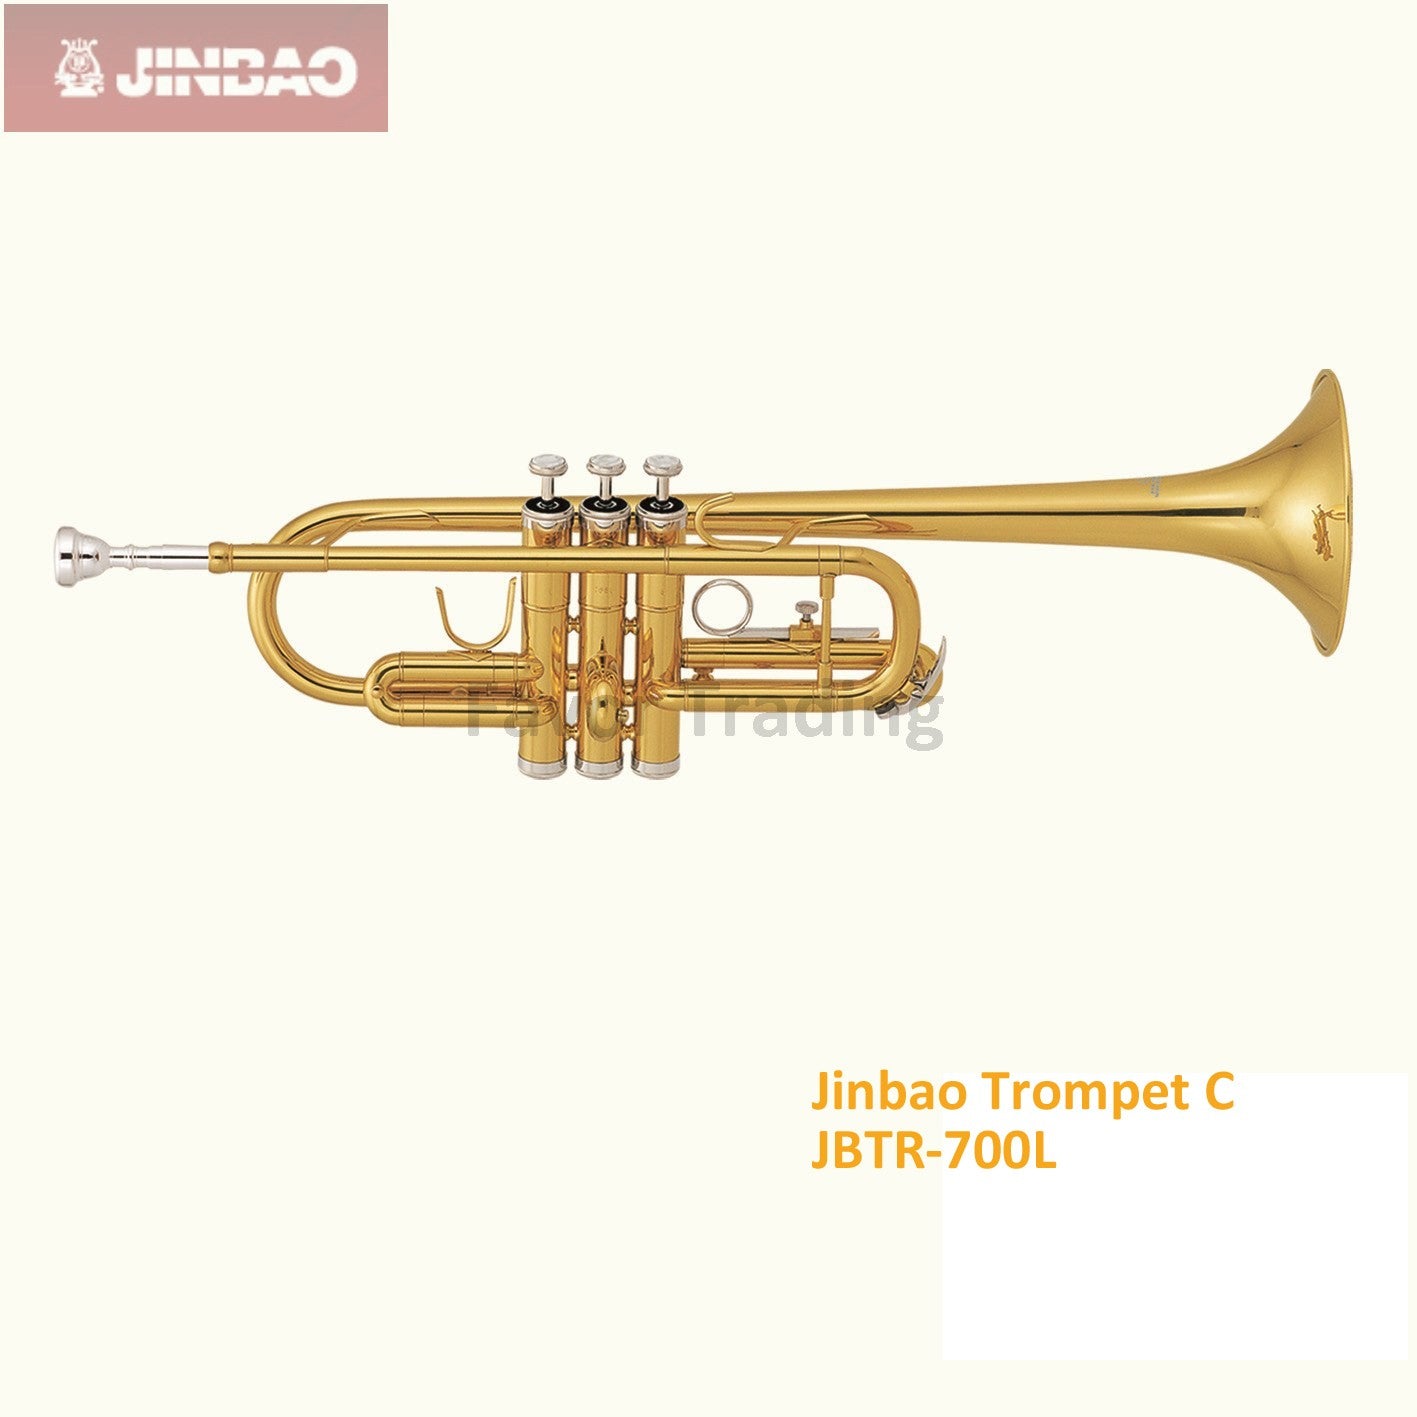 Jinbao Trompet C JBTR-700L